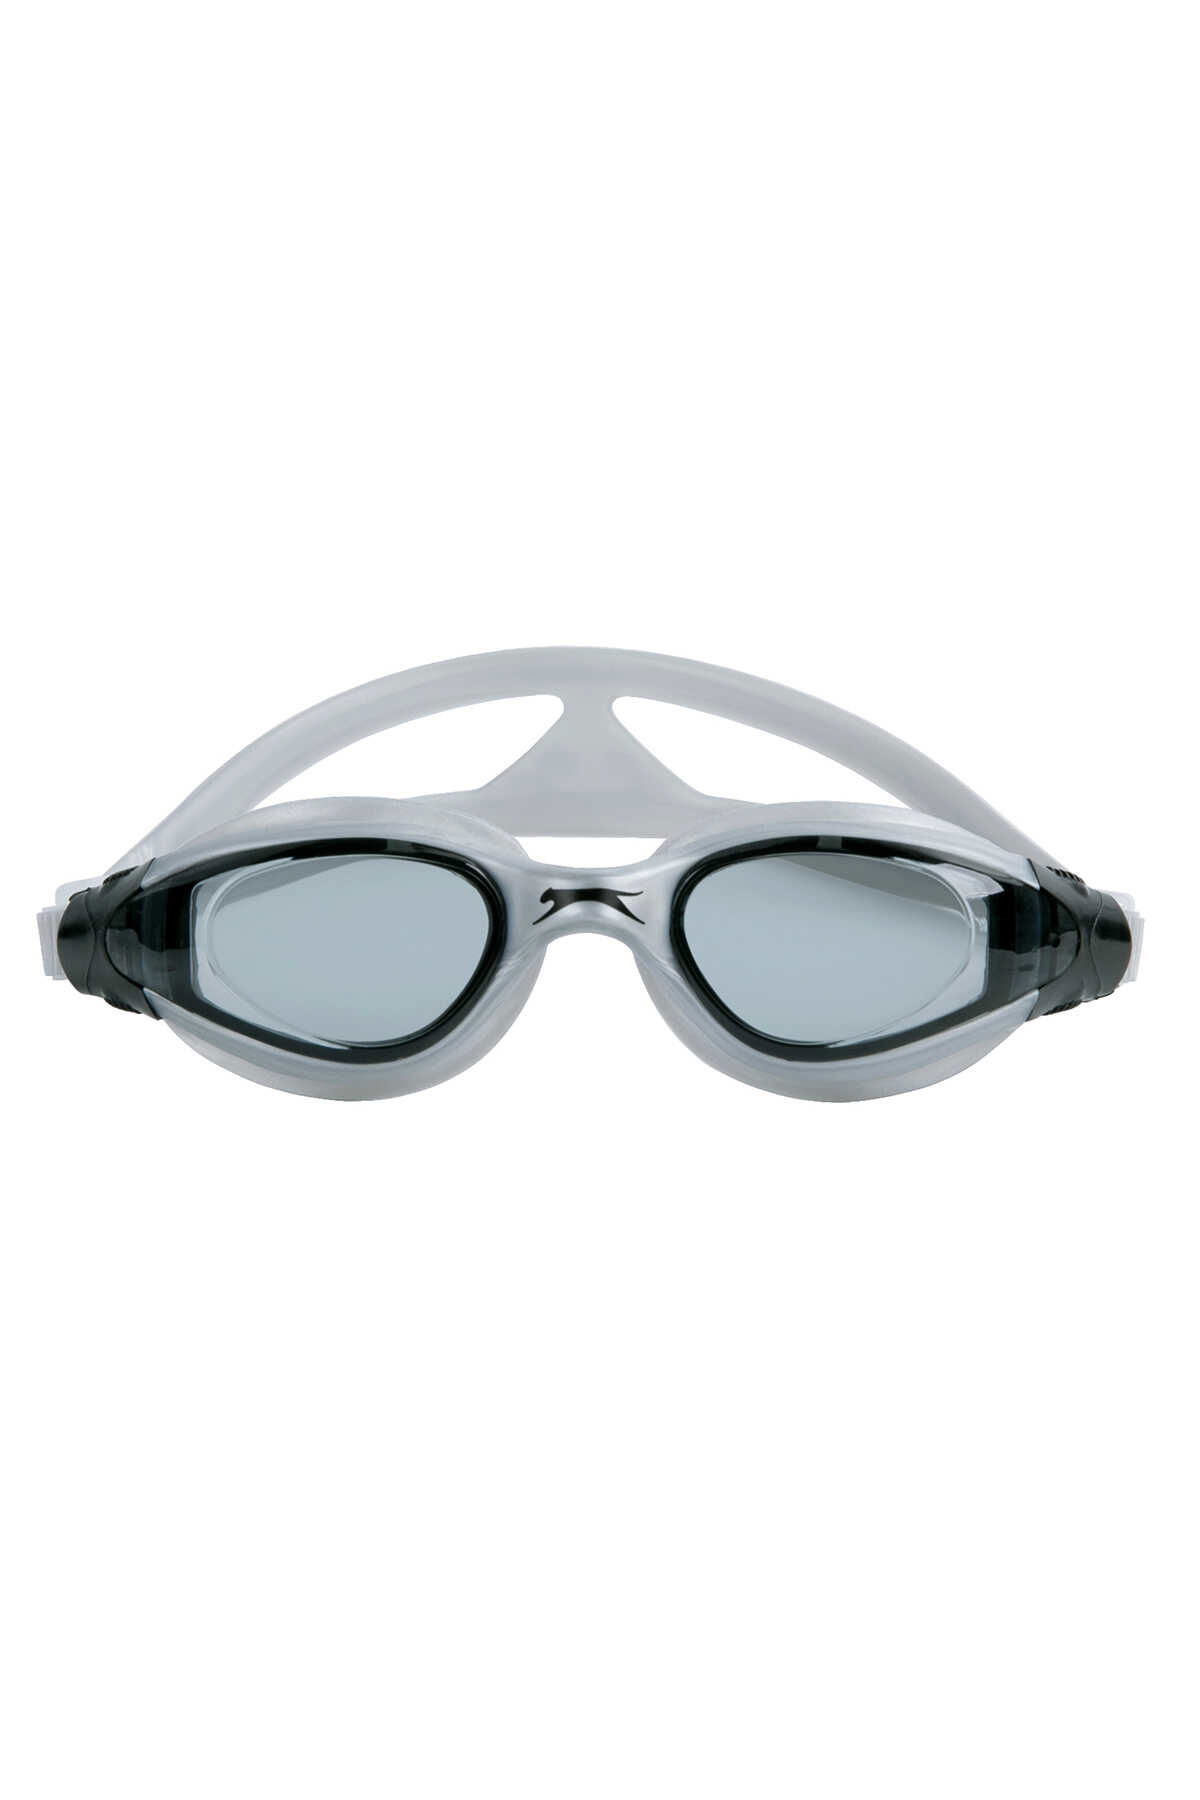 Slazenger - Slazenger Aero GS16 Unisex Çocuk Yüzücü Gözlüğü Gümüş